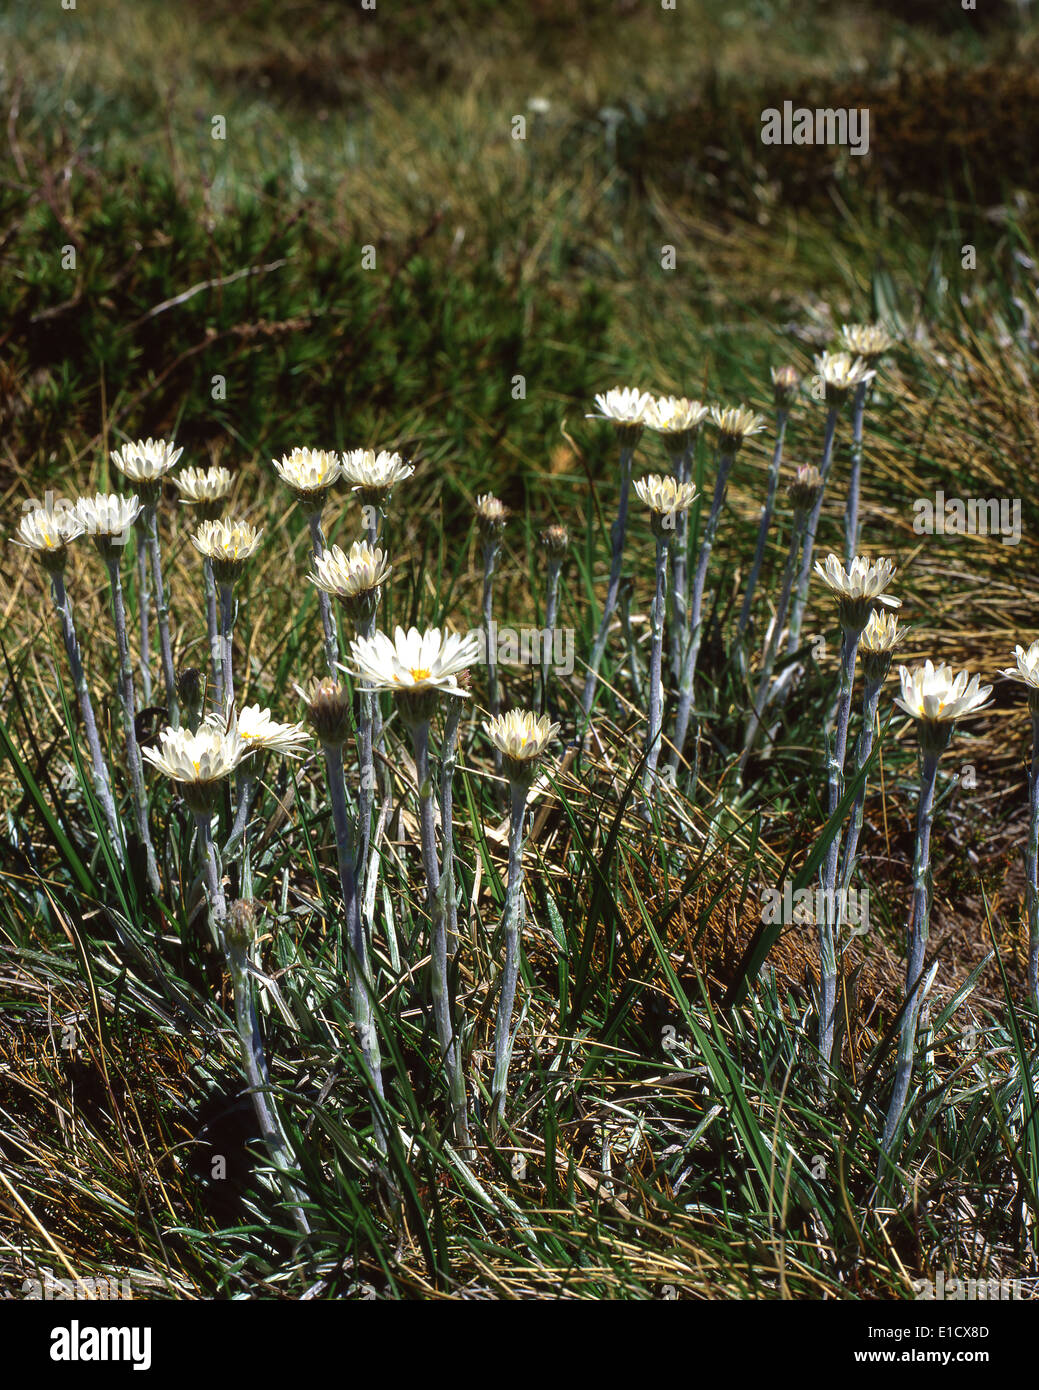 Australia: Silver Daisy (Celmisia), Snowy Mountains, NSW Stock Photo